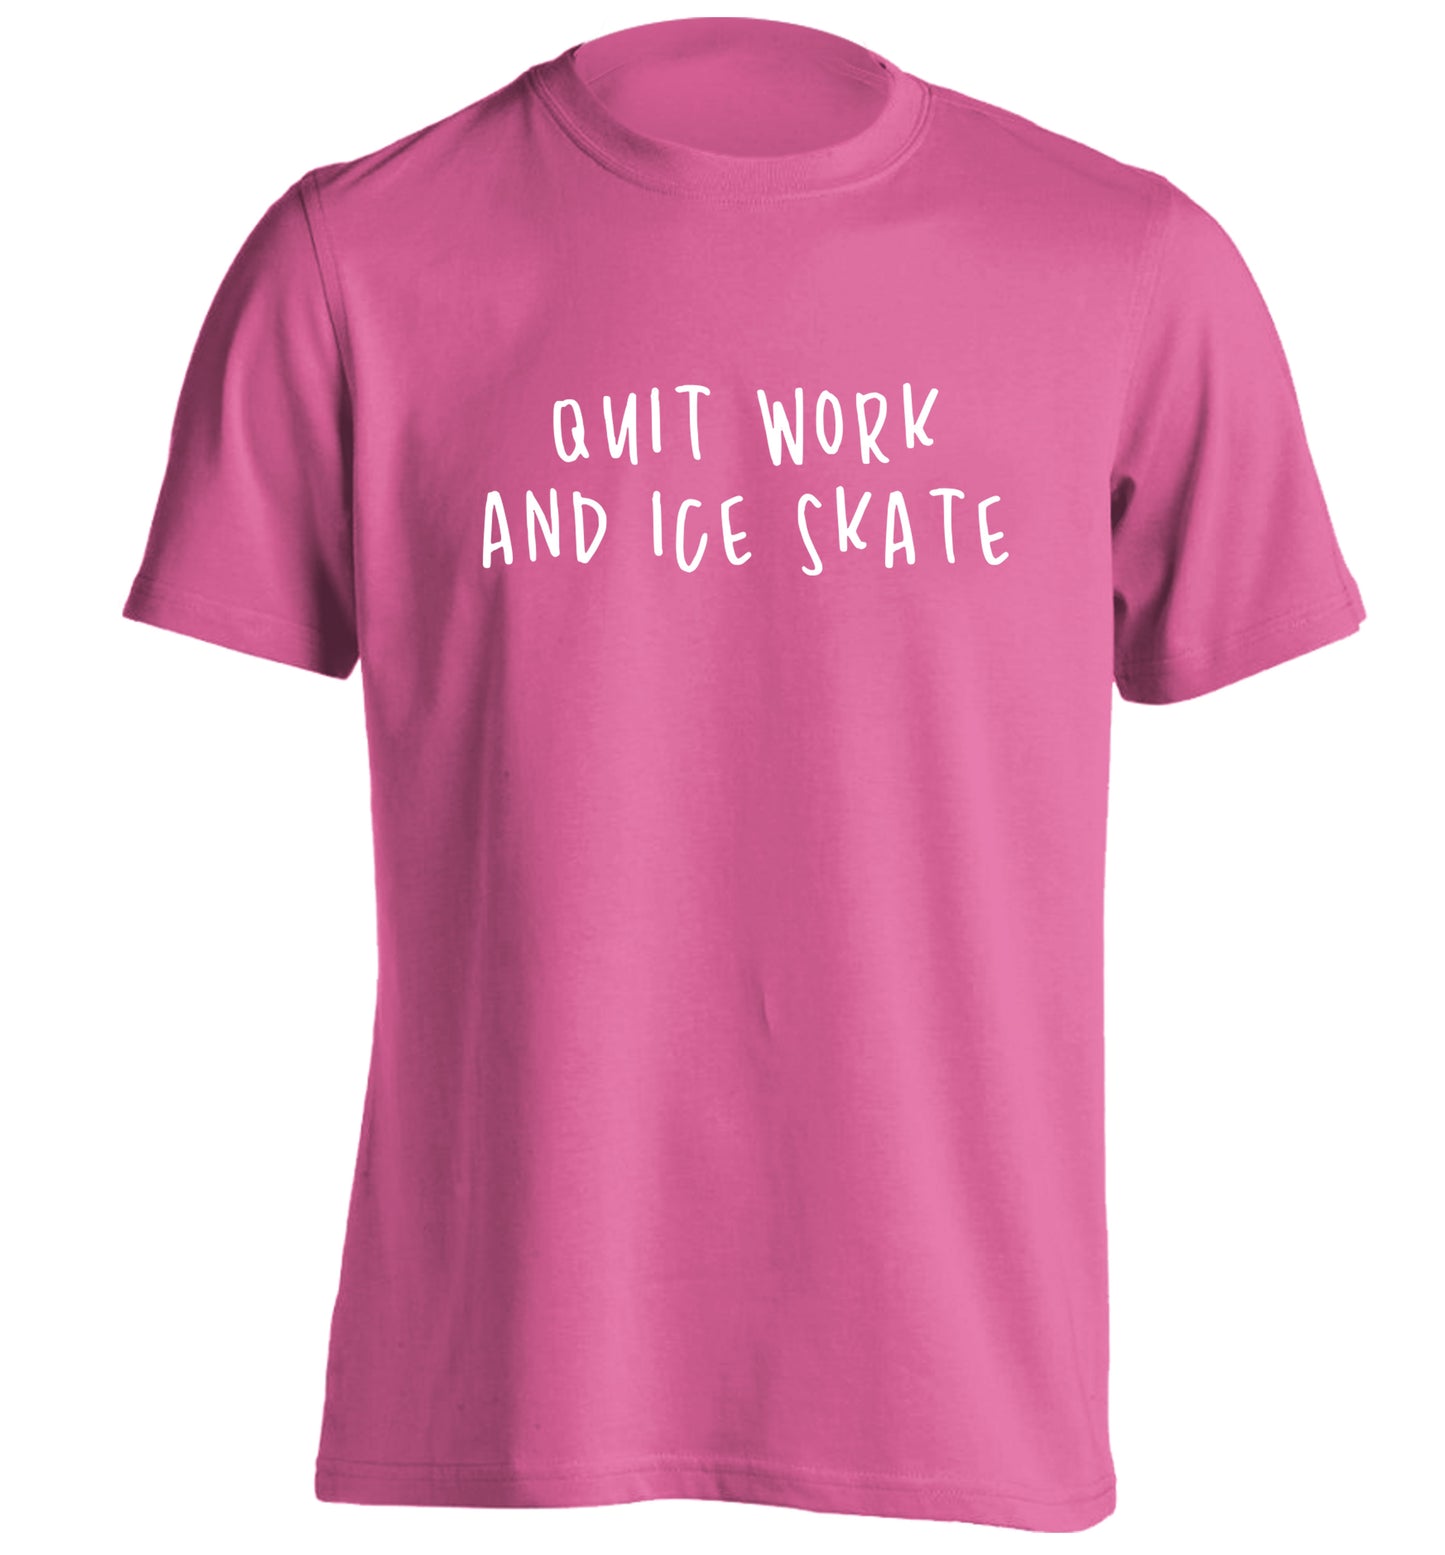 Quit work ice skate adults unisexpink Tshirt 2XL